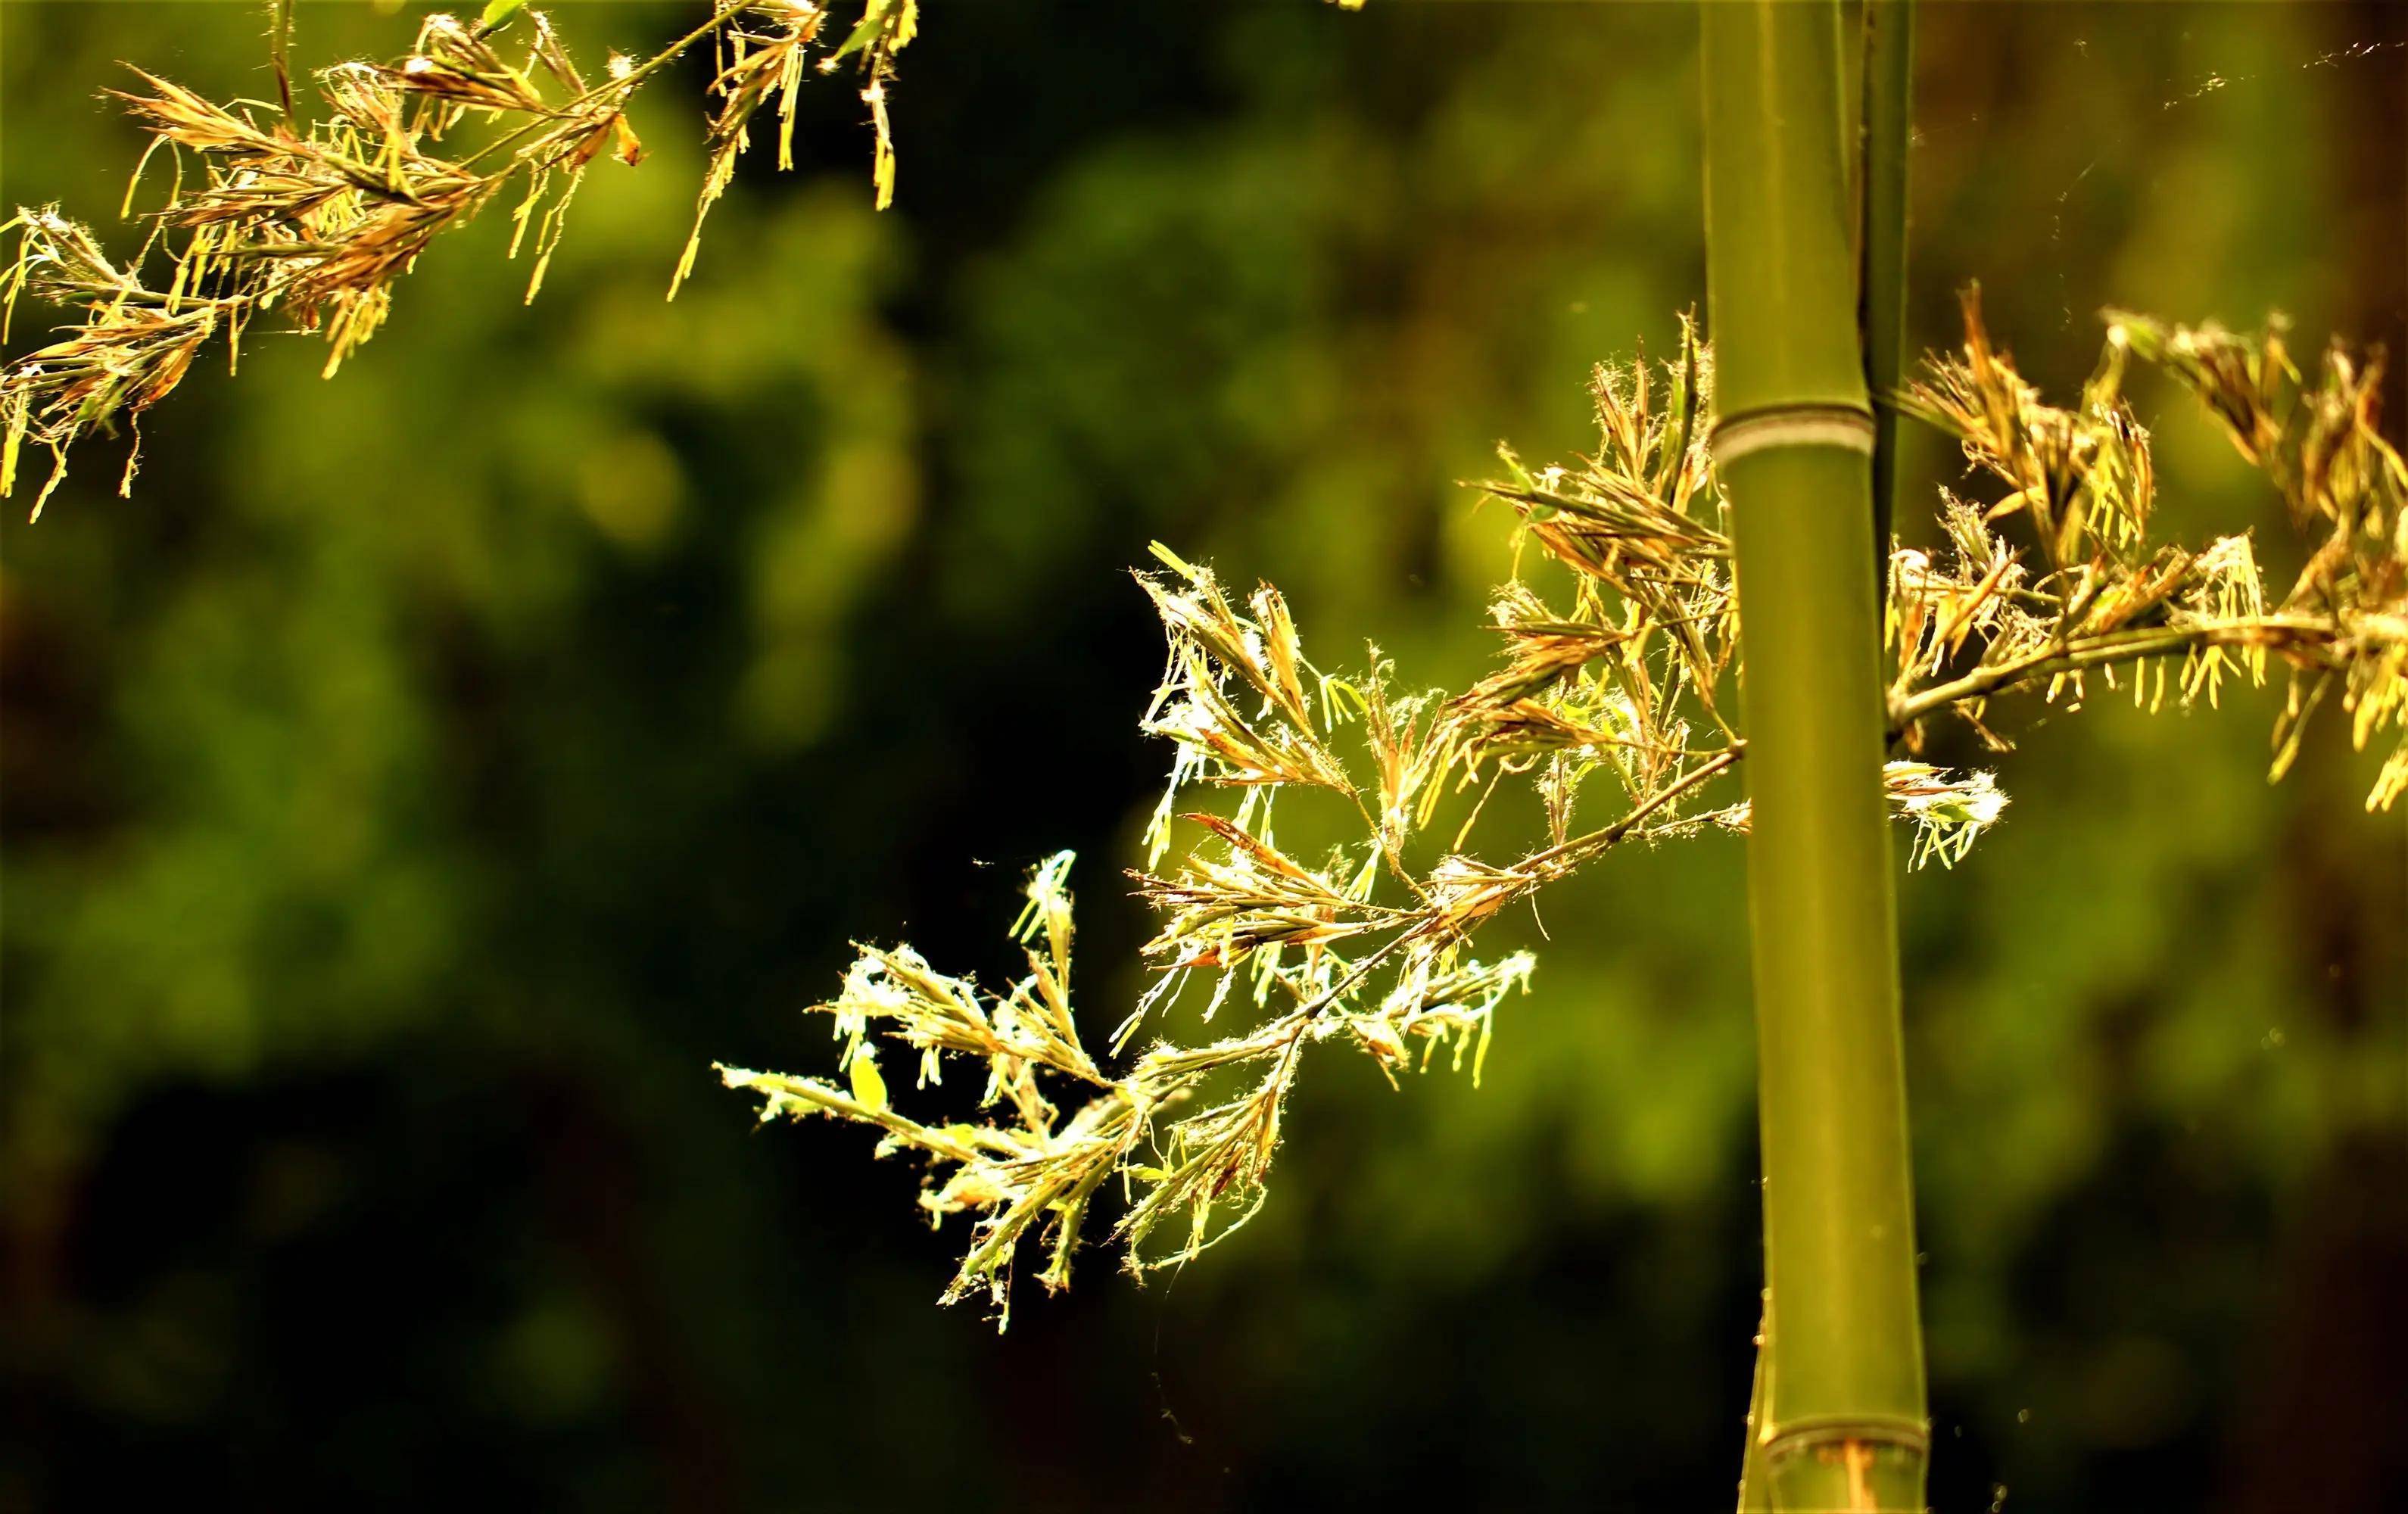 竹子开花之谜了解一下,竹子开花意味着什么?